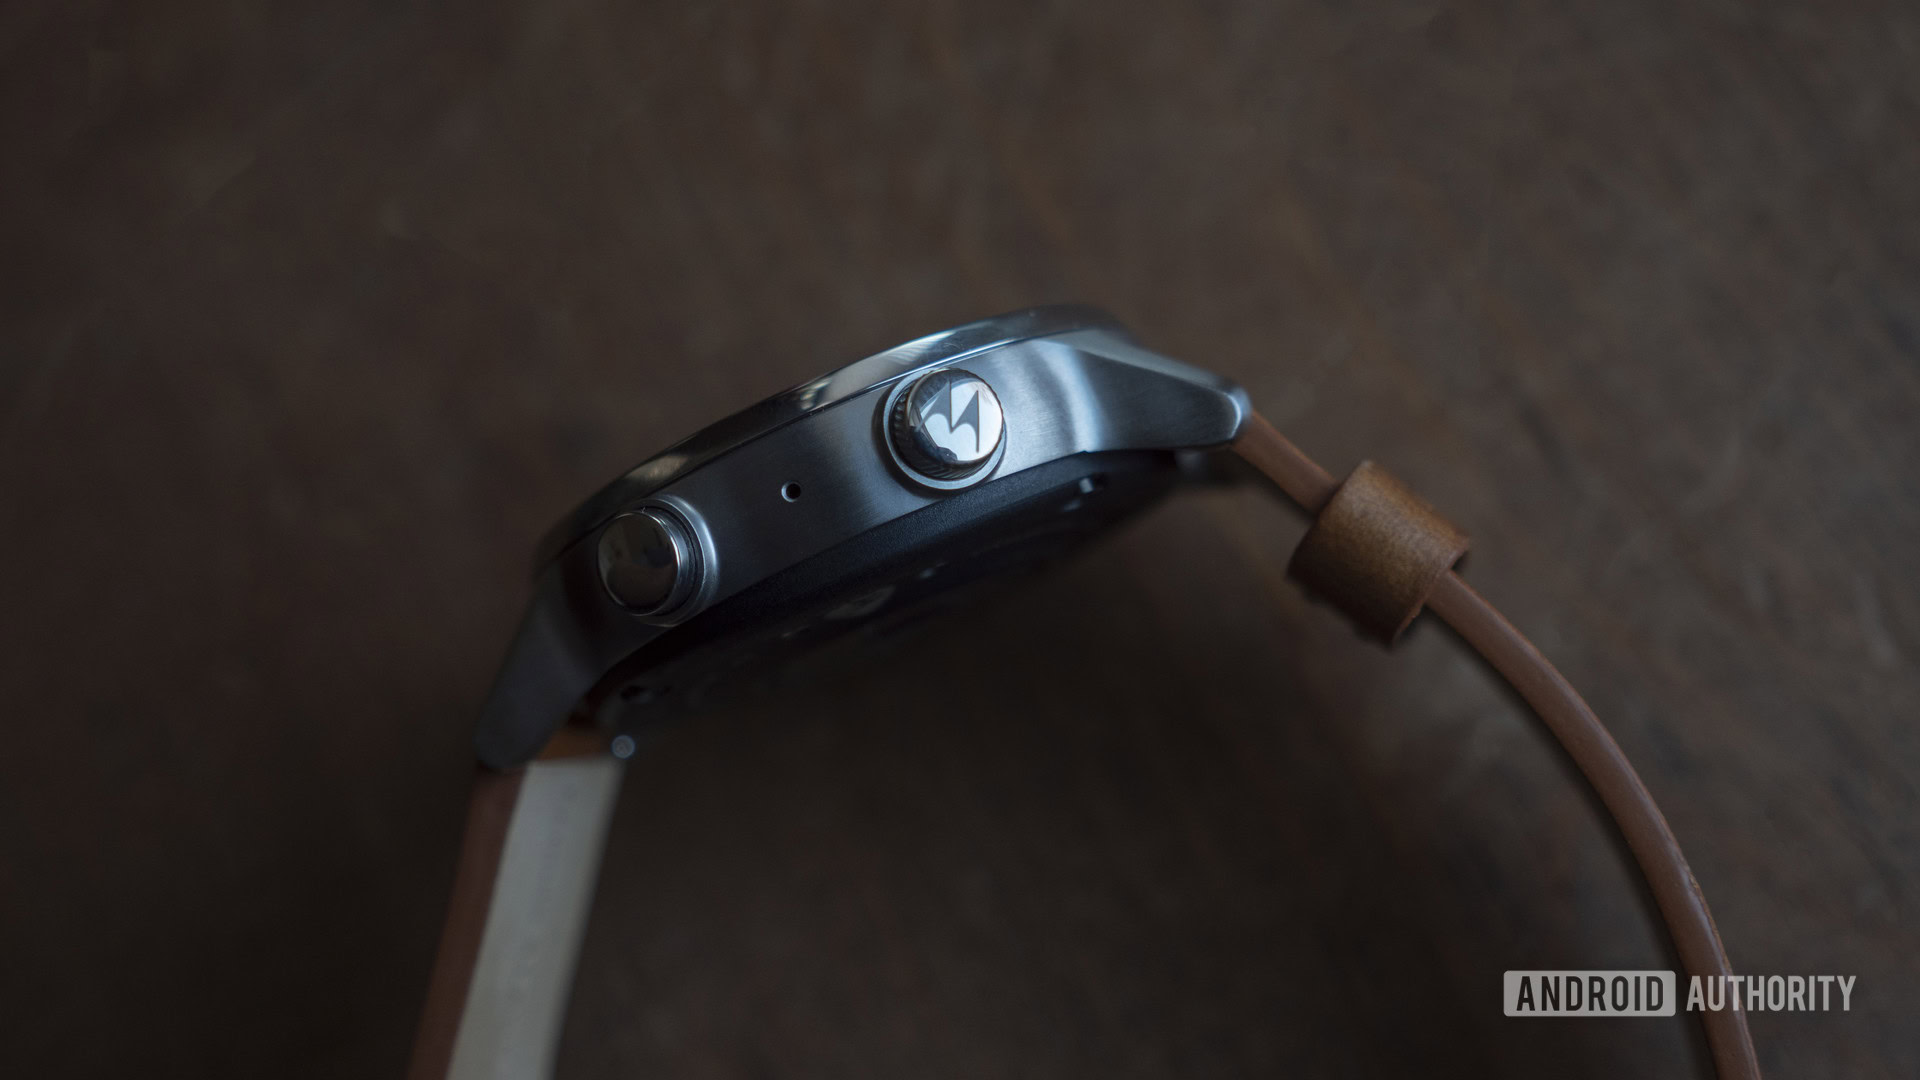 Moto 360, Gear S e G Watch R: smartwatches que serão apresentados na IFA